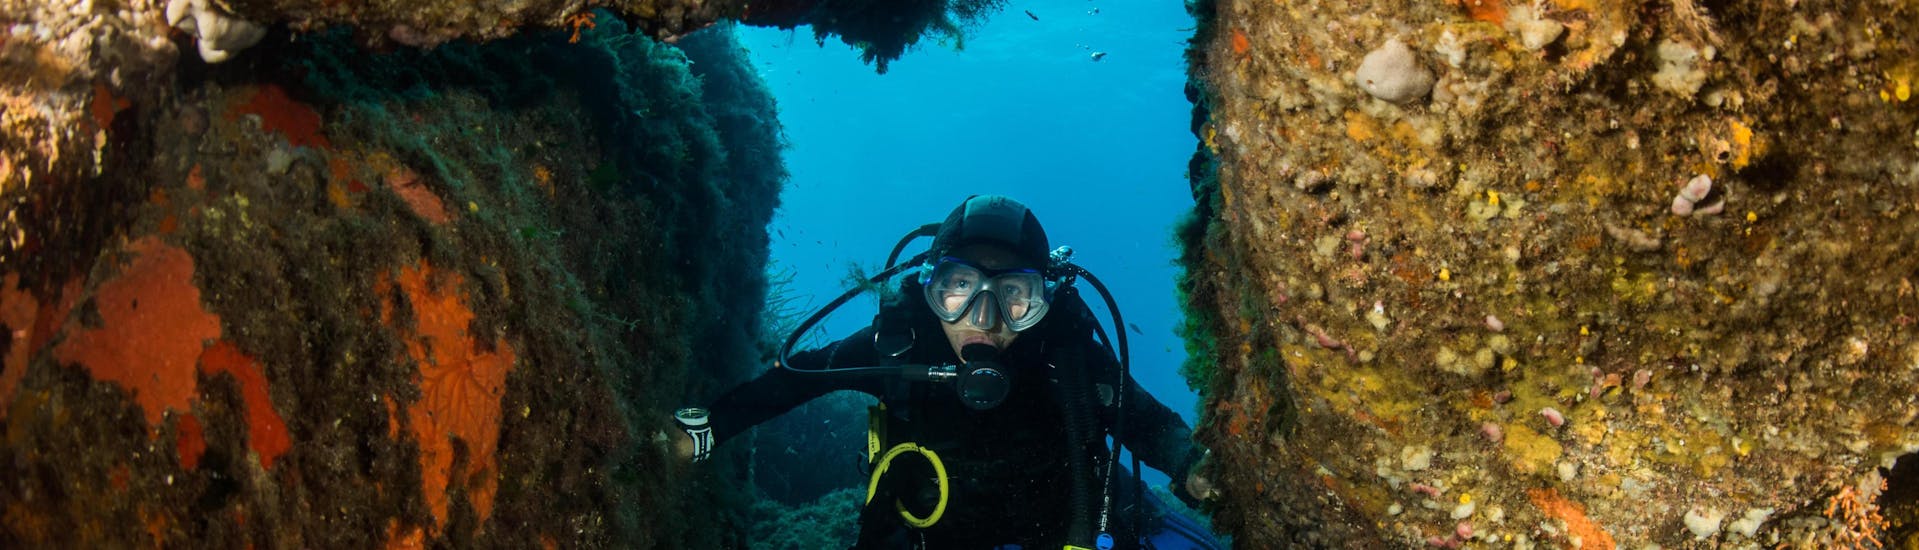 Un plongeur profite des fonds marins en Haute-Corse pendant une excursion de plongée.